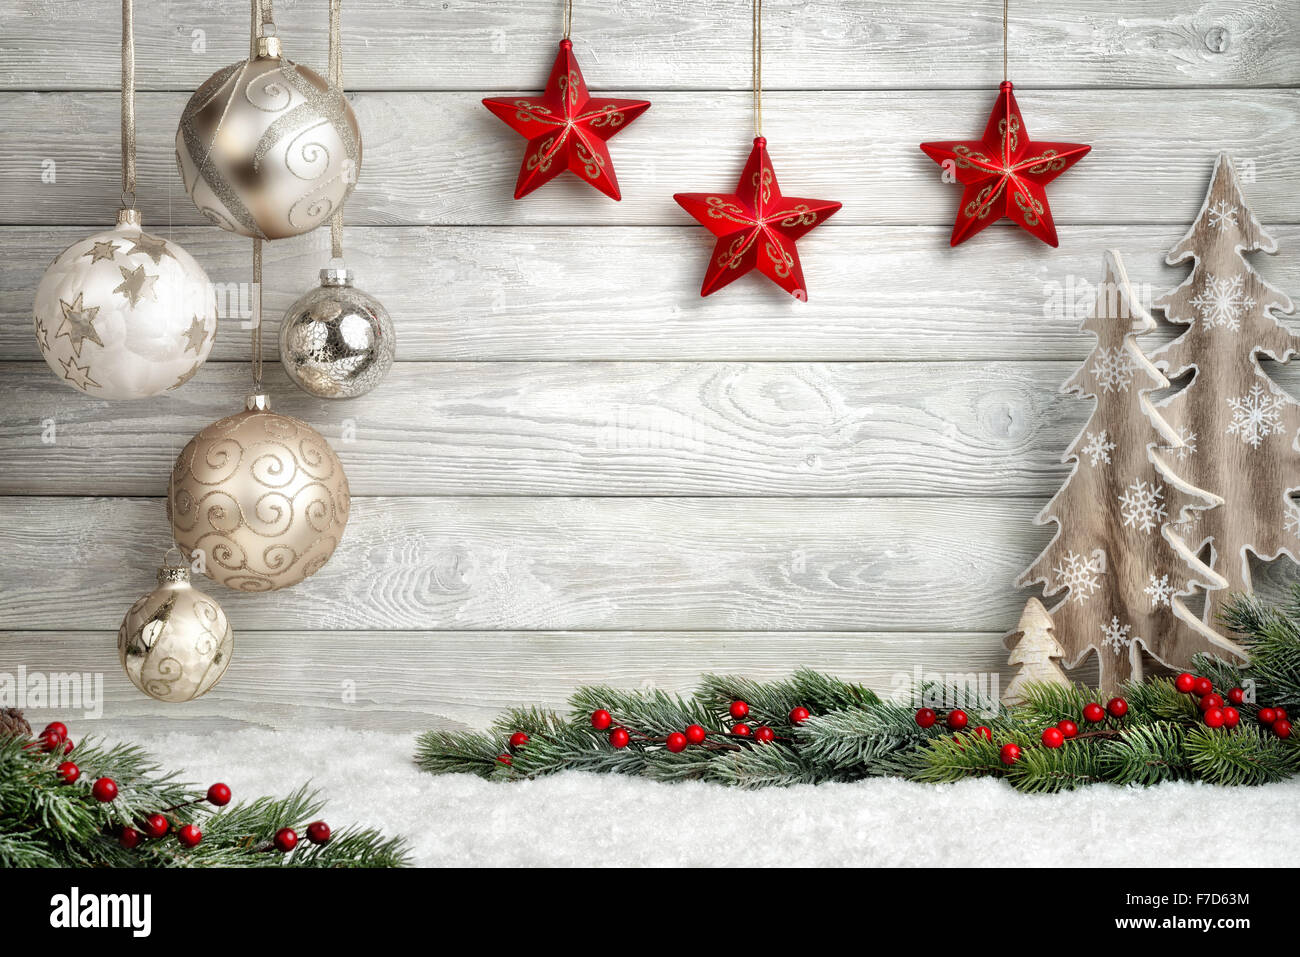 Fond de Noël en bois lumineux, moderne, style simple et élégant, avec une bordure de branches de sapin, boules, étoiles, plantes ornementales Banque D'Images